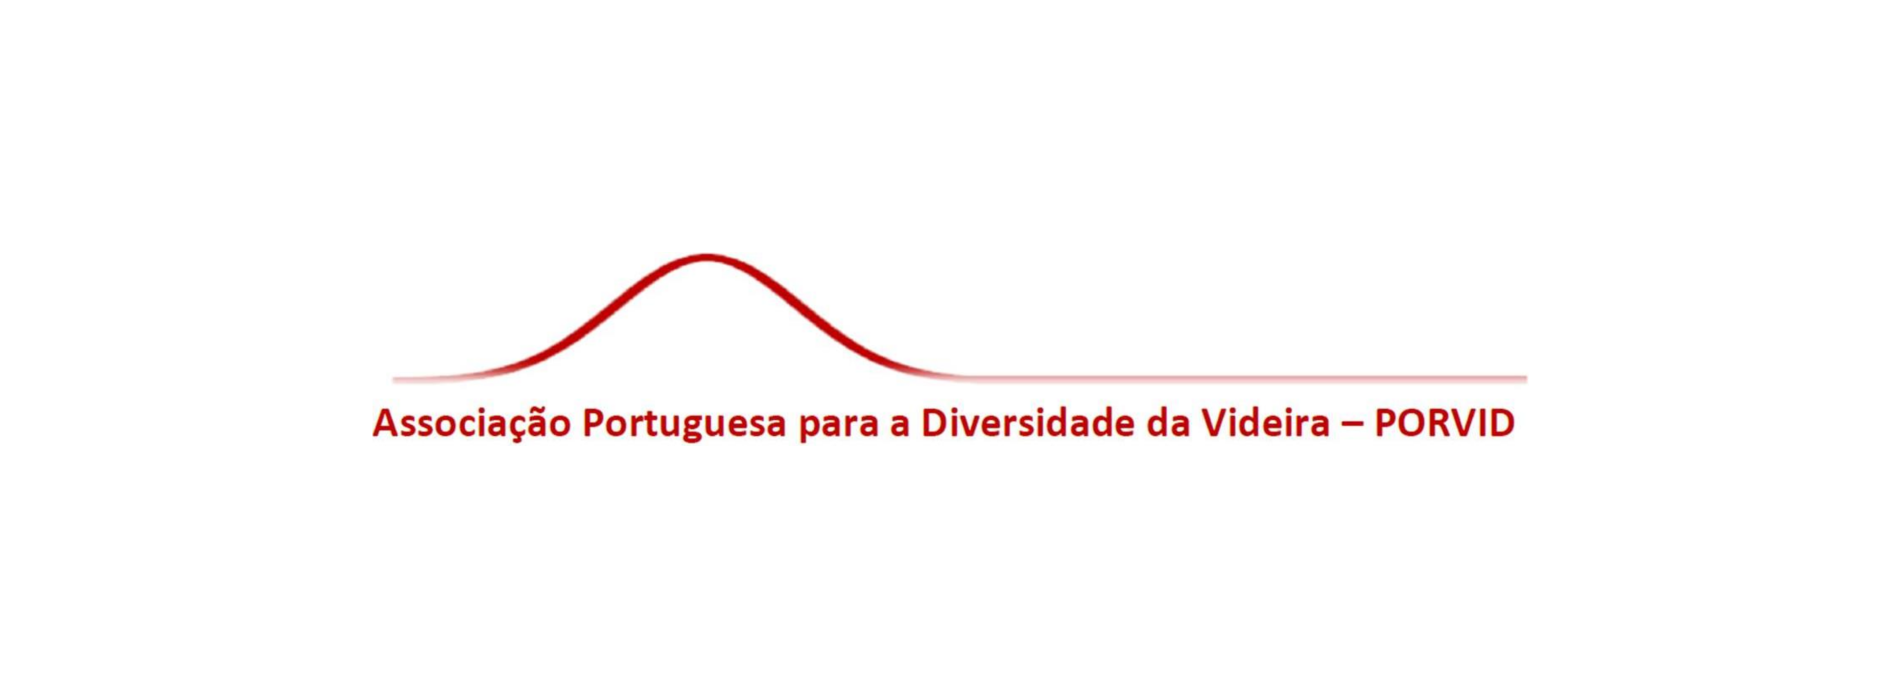 PORVID – Associação Portuguesa para a Diversidade da Videira